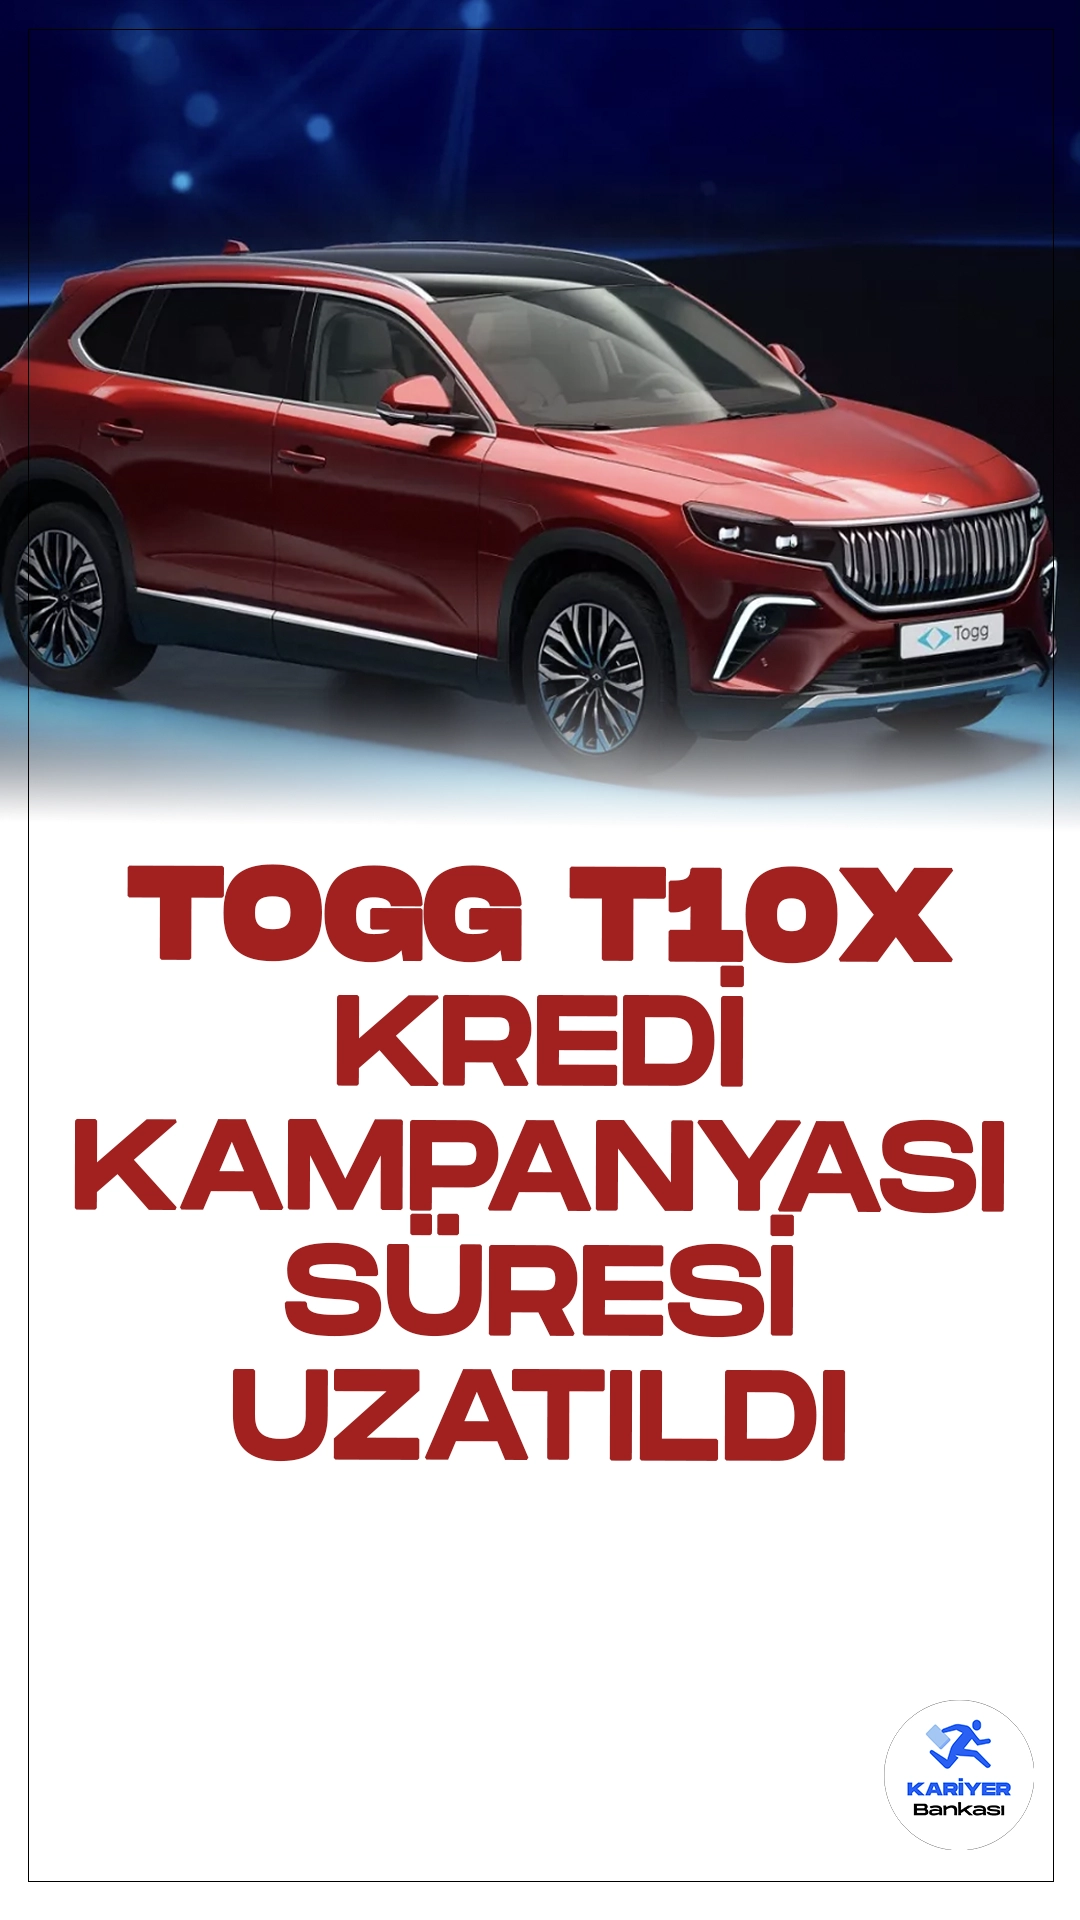 Togg'a Özel Finansman Desteğinde Süre Uzatıldı.Türkiye'nin yerli ve milli otomobili Togg'un T10X modeline özel 800 bin liralık kredi kampanyasının süresi uzatıldı. Bu özel kampanya, 26 Mayıs Pazar günü sonuna kadar devam edecek.